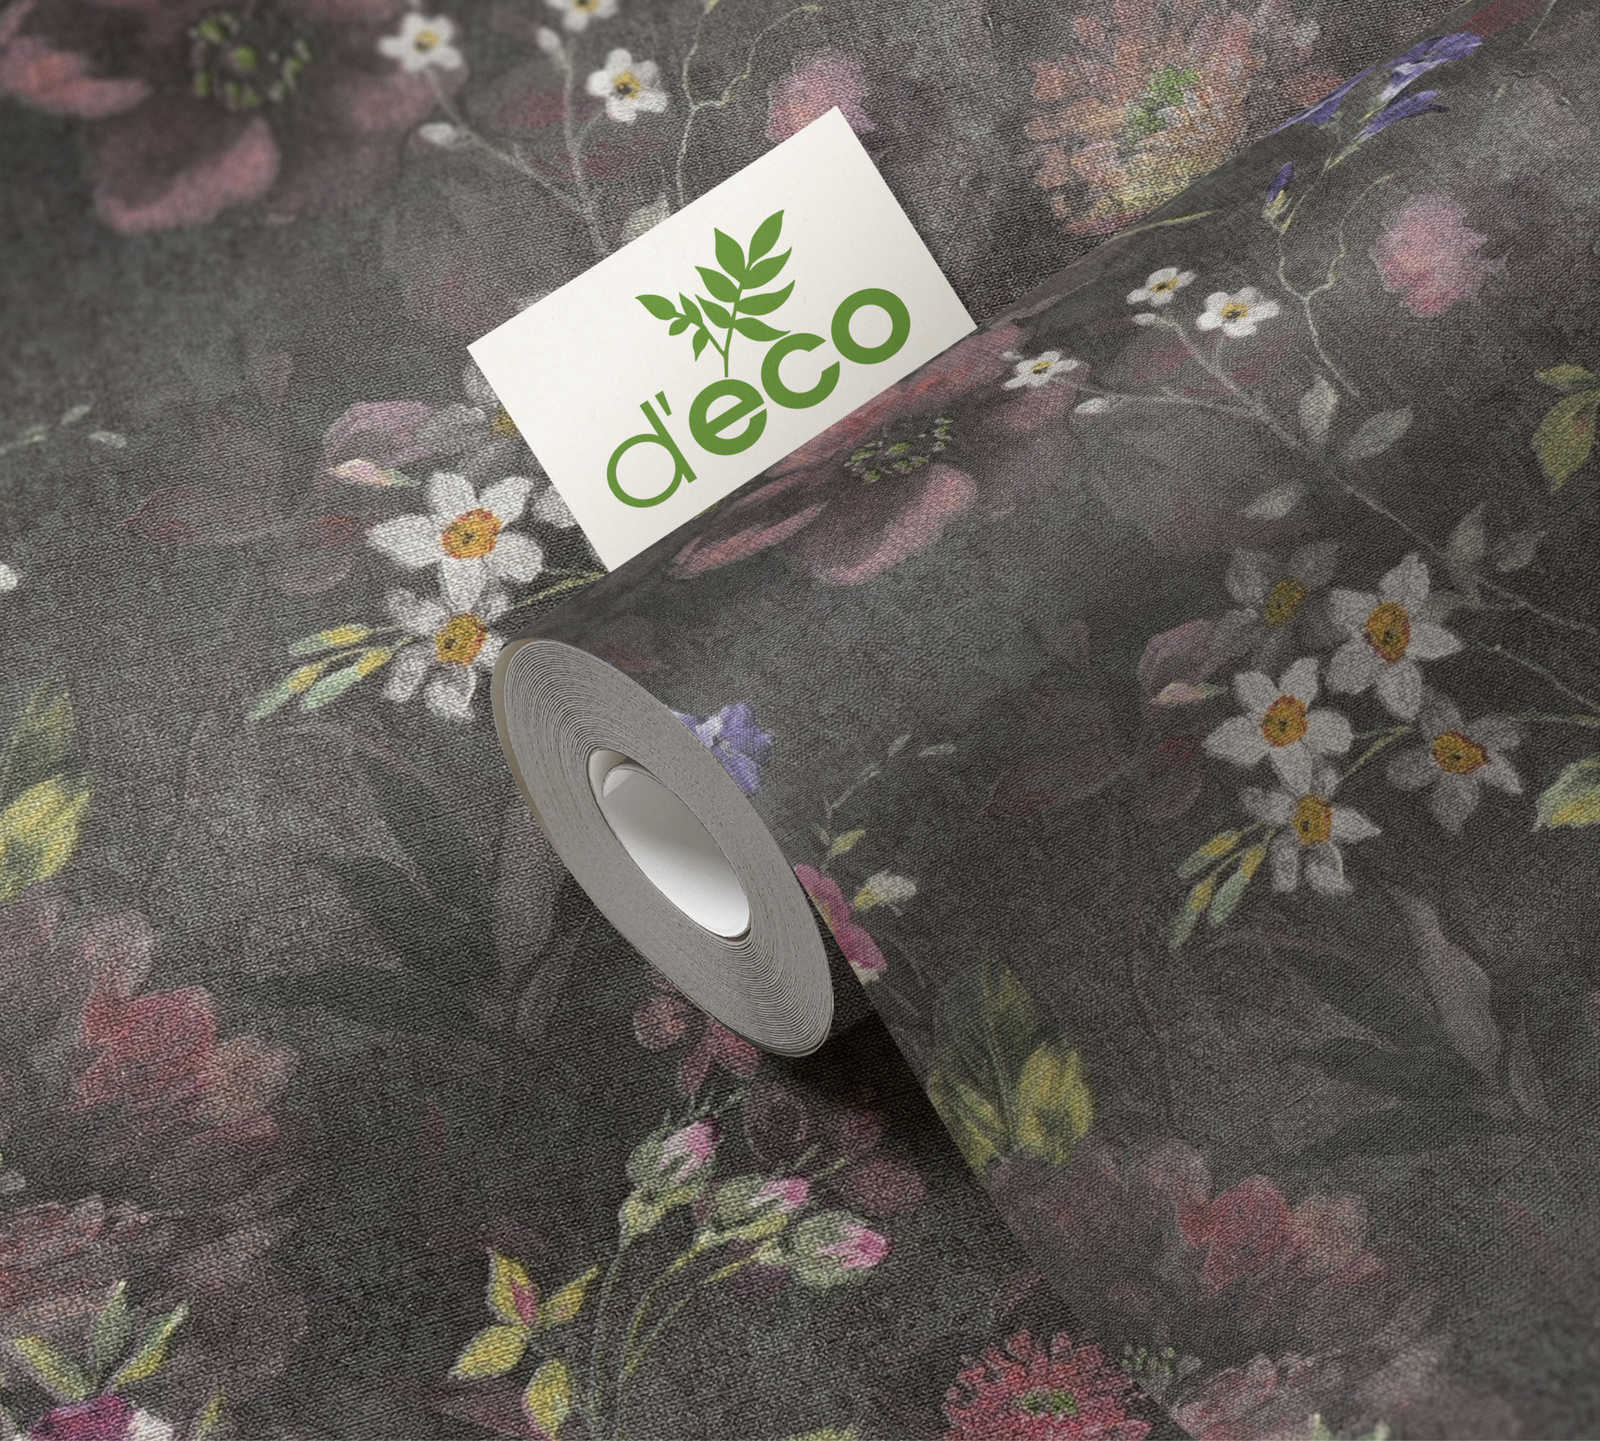             Papel pintado no tejido con motivos florales sin PVC - negro, de color, verde
        